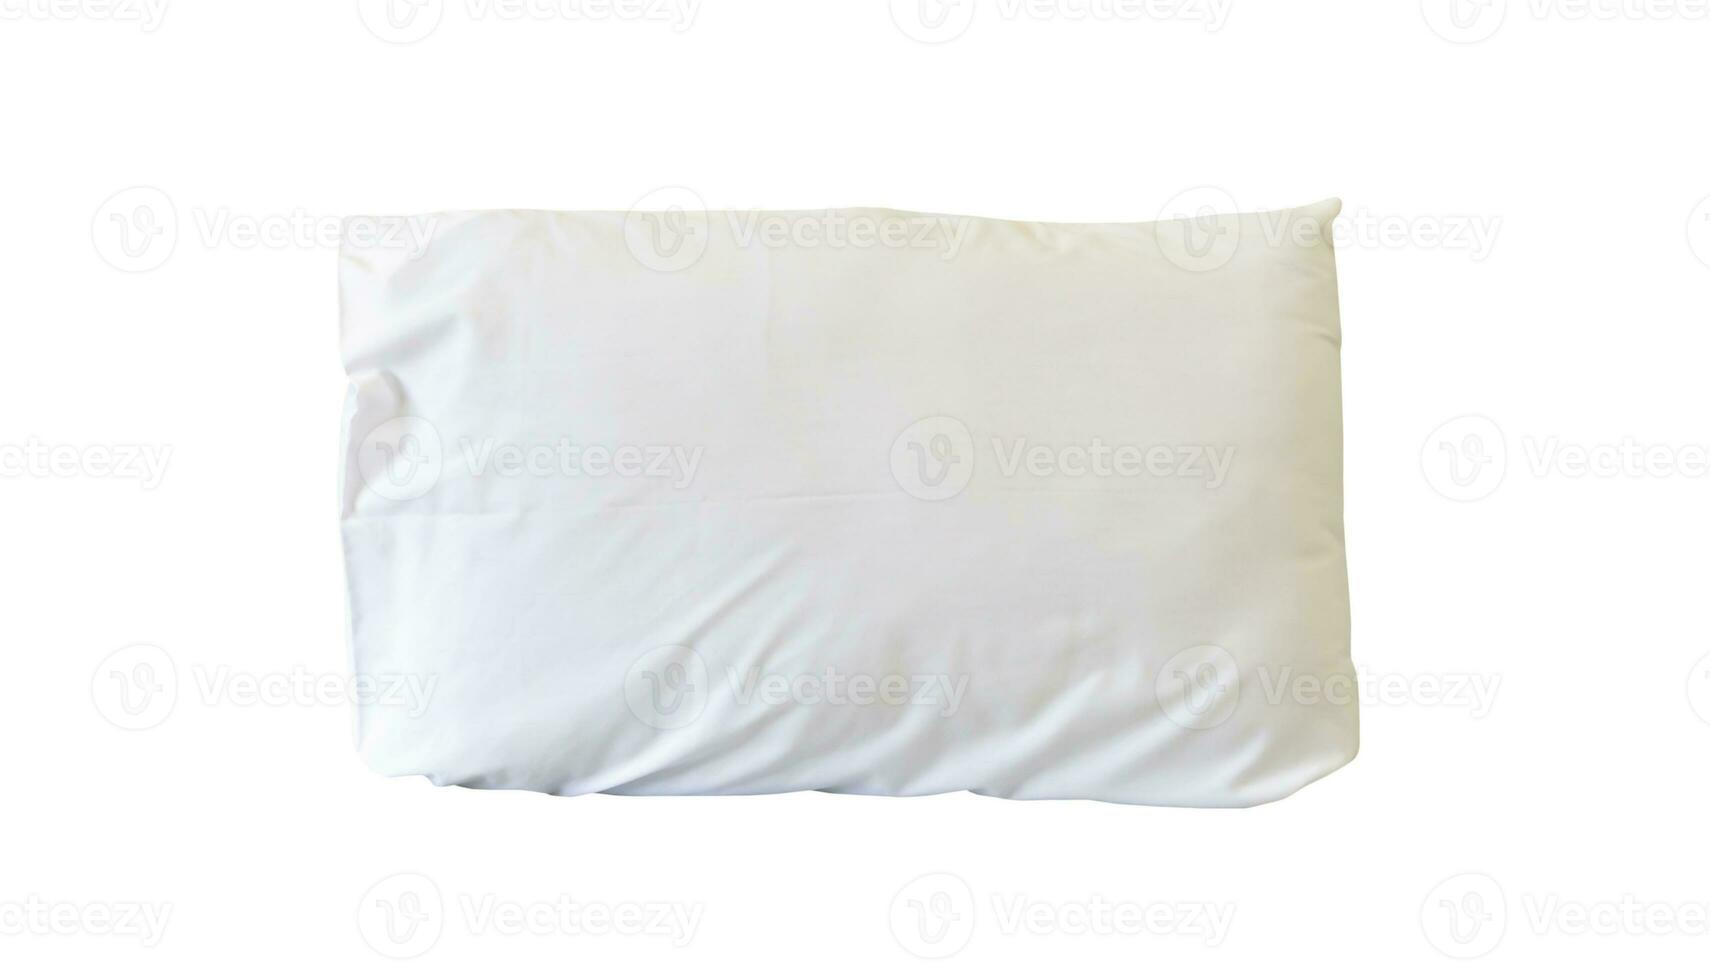 travesseiro branco com estojo após o uso do hóspede no quarto de hotel ou resort isolado no fundo branco com traçado de recorte, conceito de sono confortável e feliz na vida diária foto